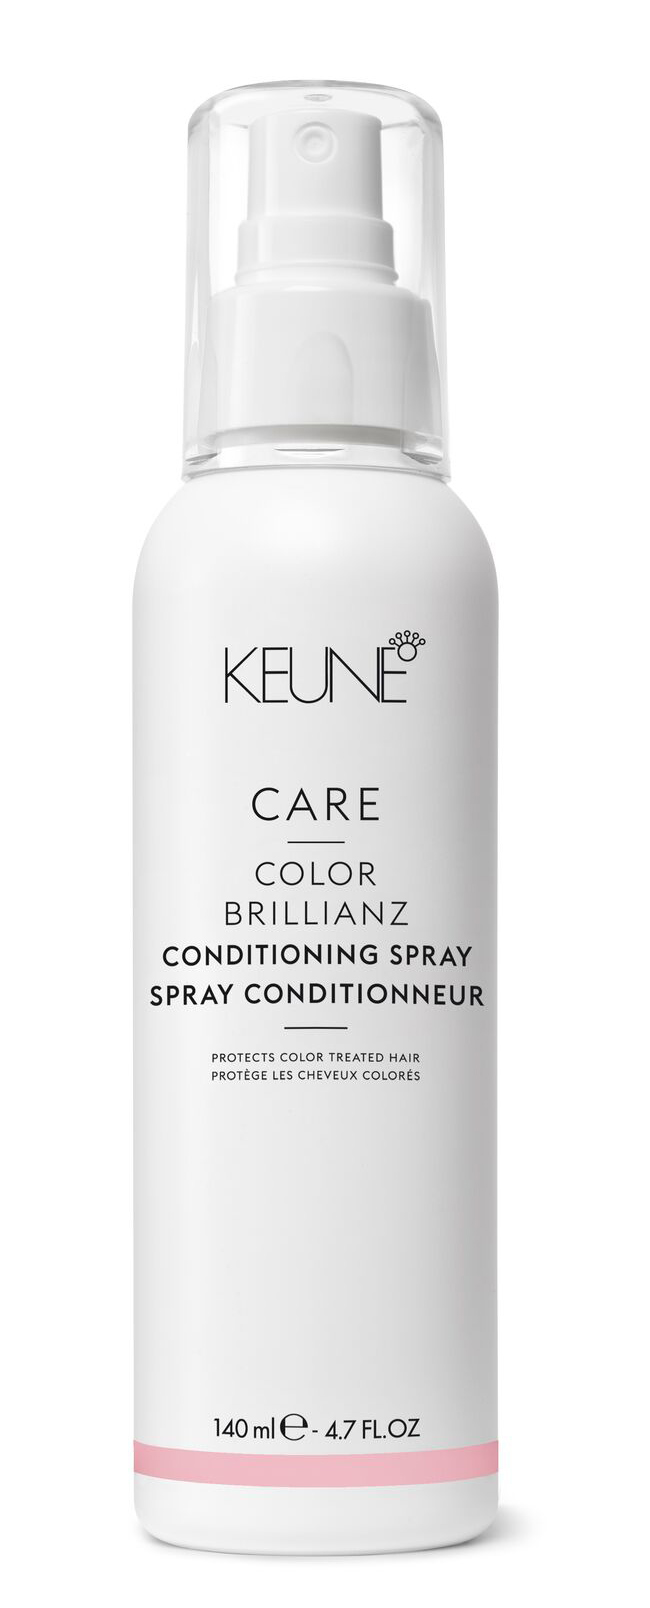 CARE Color Brillianz Condition Spray